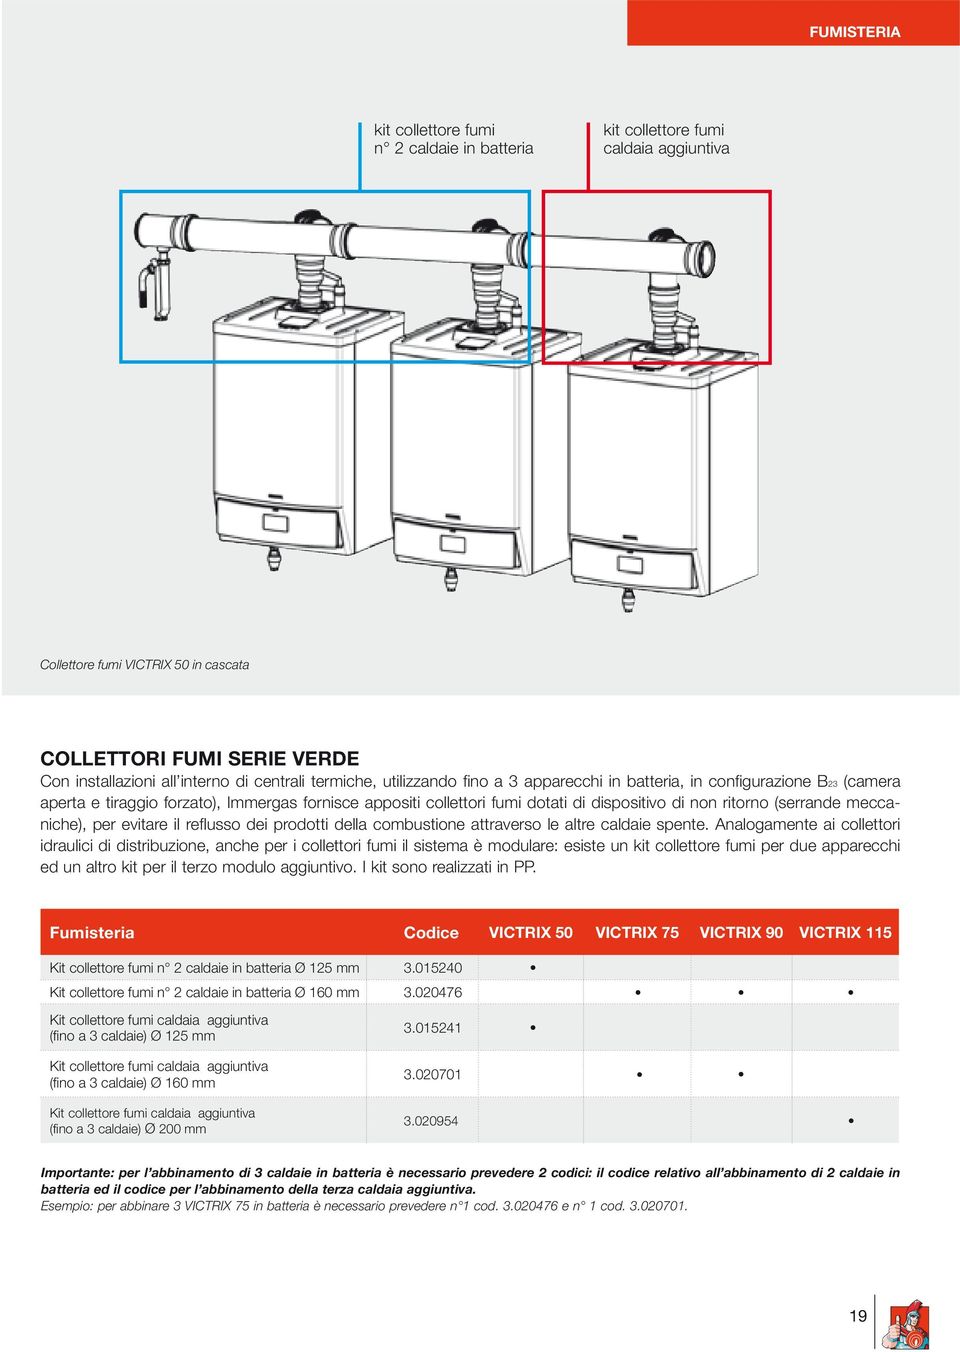 ritorno (serrande meccaniche), per evitare il reflusso dei prodotti della combustione attraverso le altre caldaie spente.